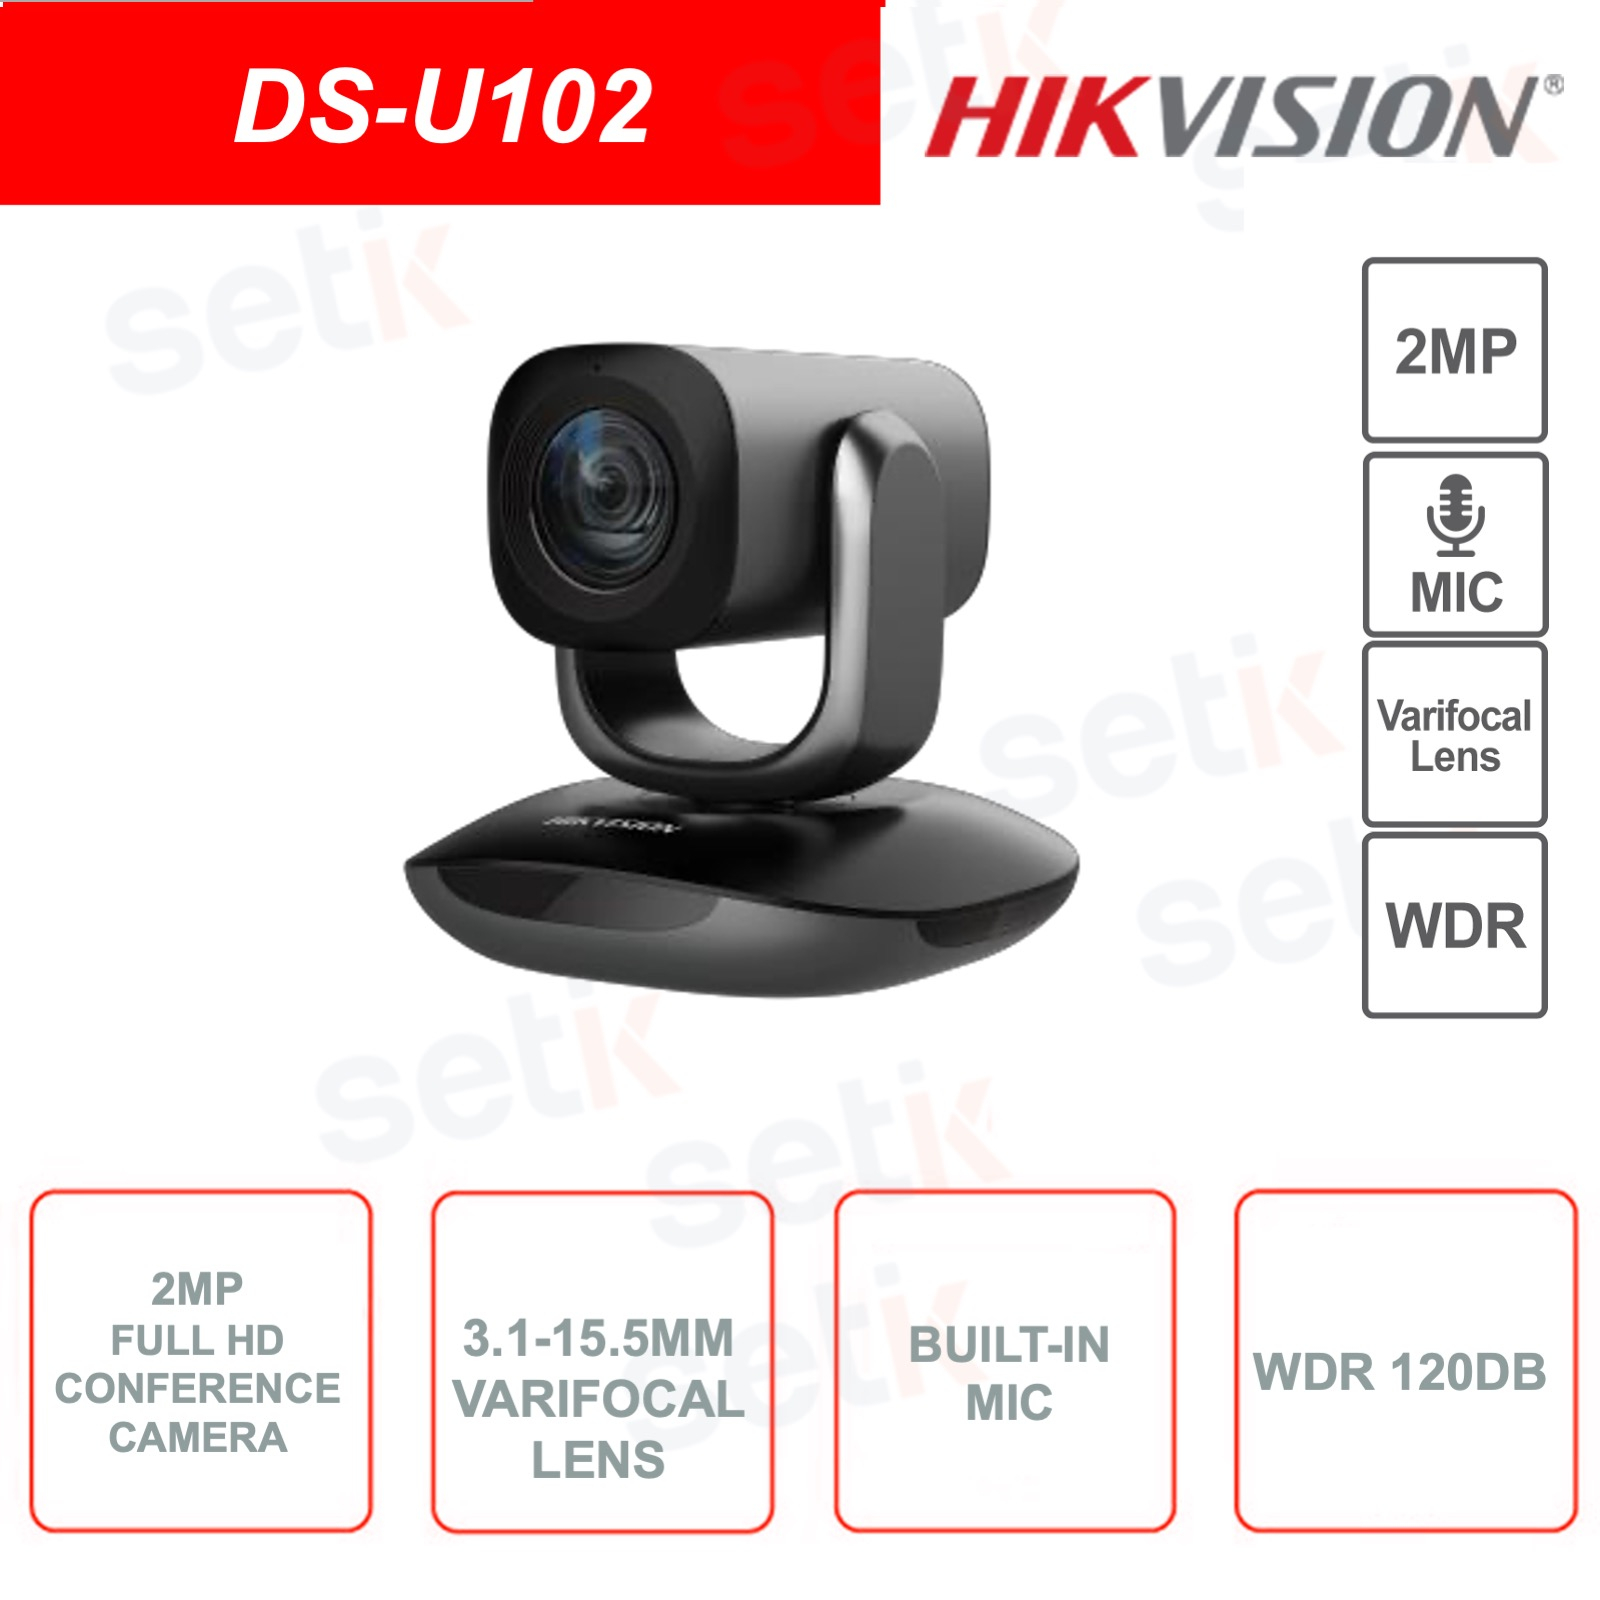 DS-U102 - Cámara Full HD de 2 MP para videoconferencia con lente